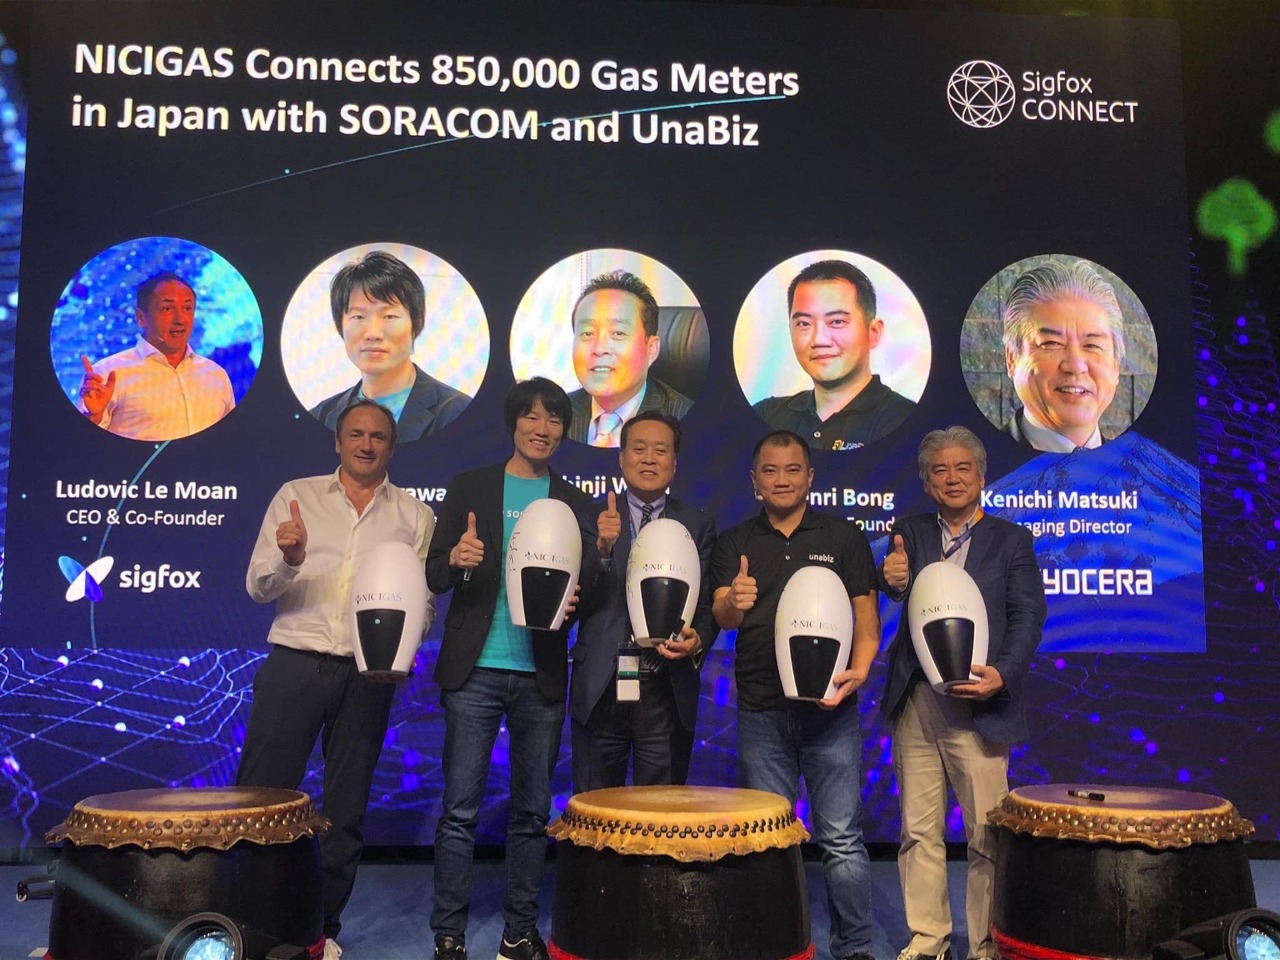 Projeto de 850.000 medidores de gás com Sigfox no Japão é uma das maiores implantações de soluções IoT no mundo